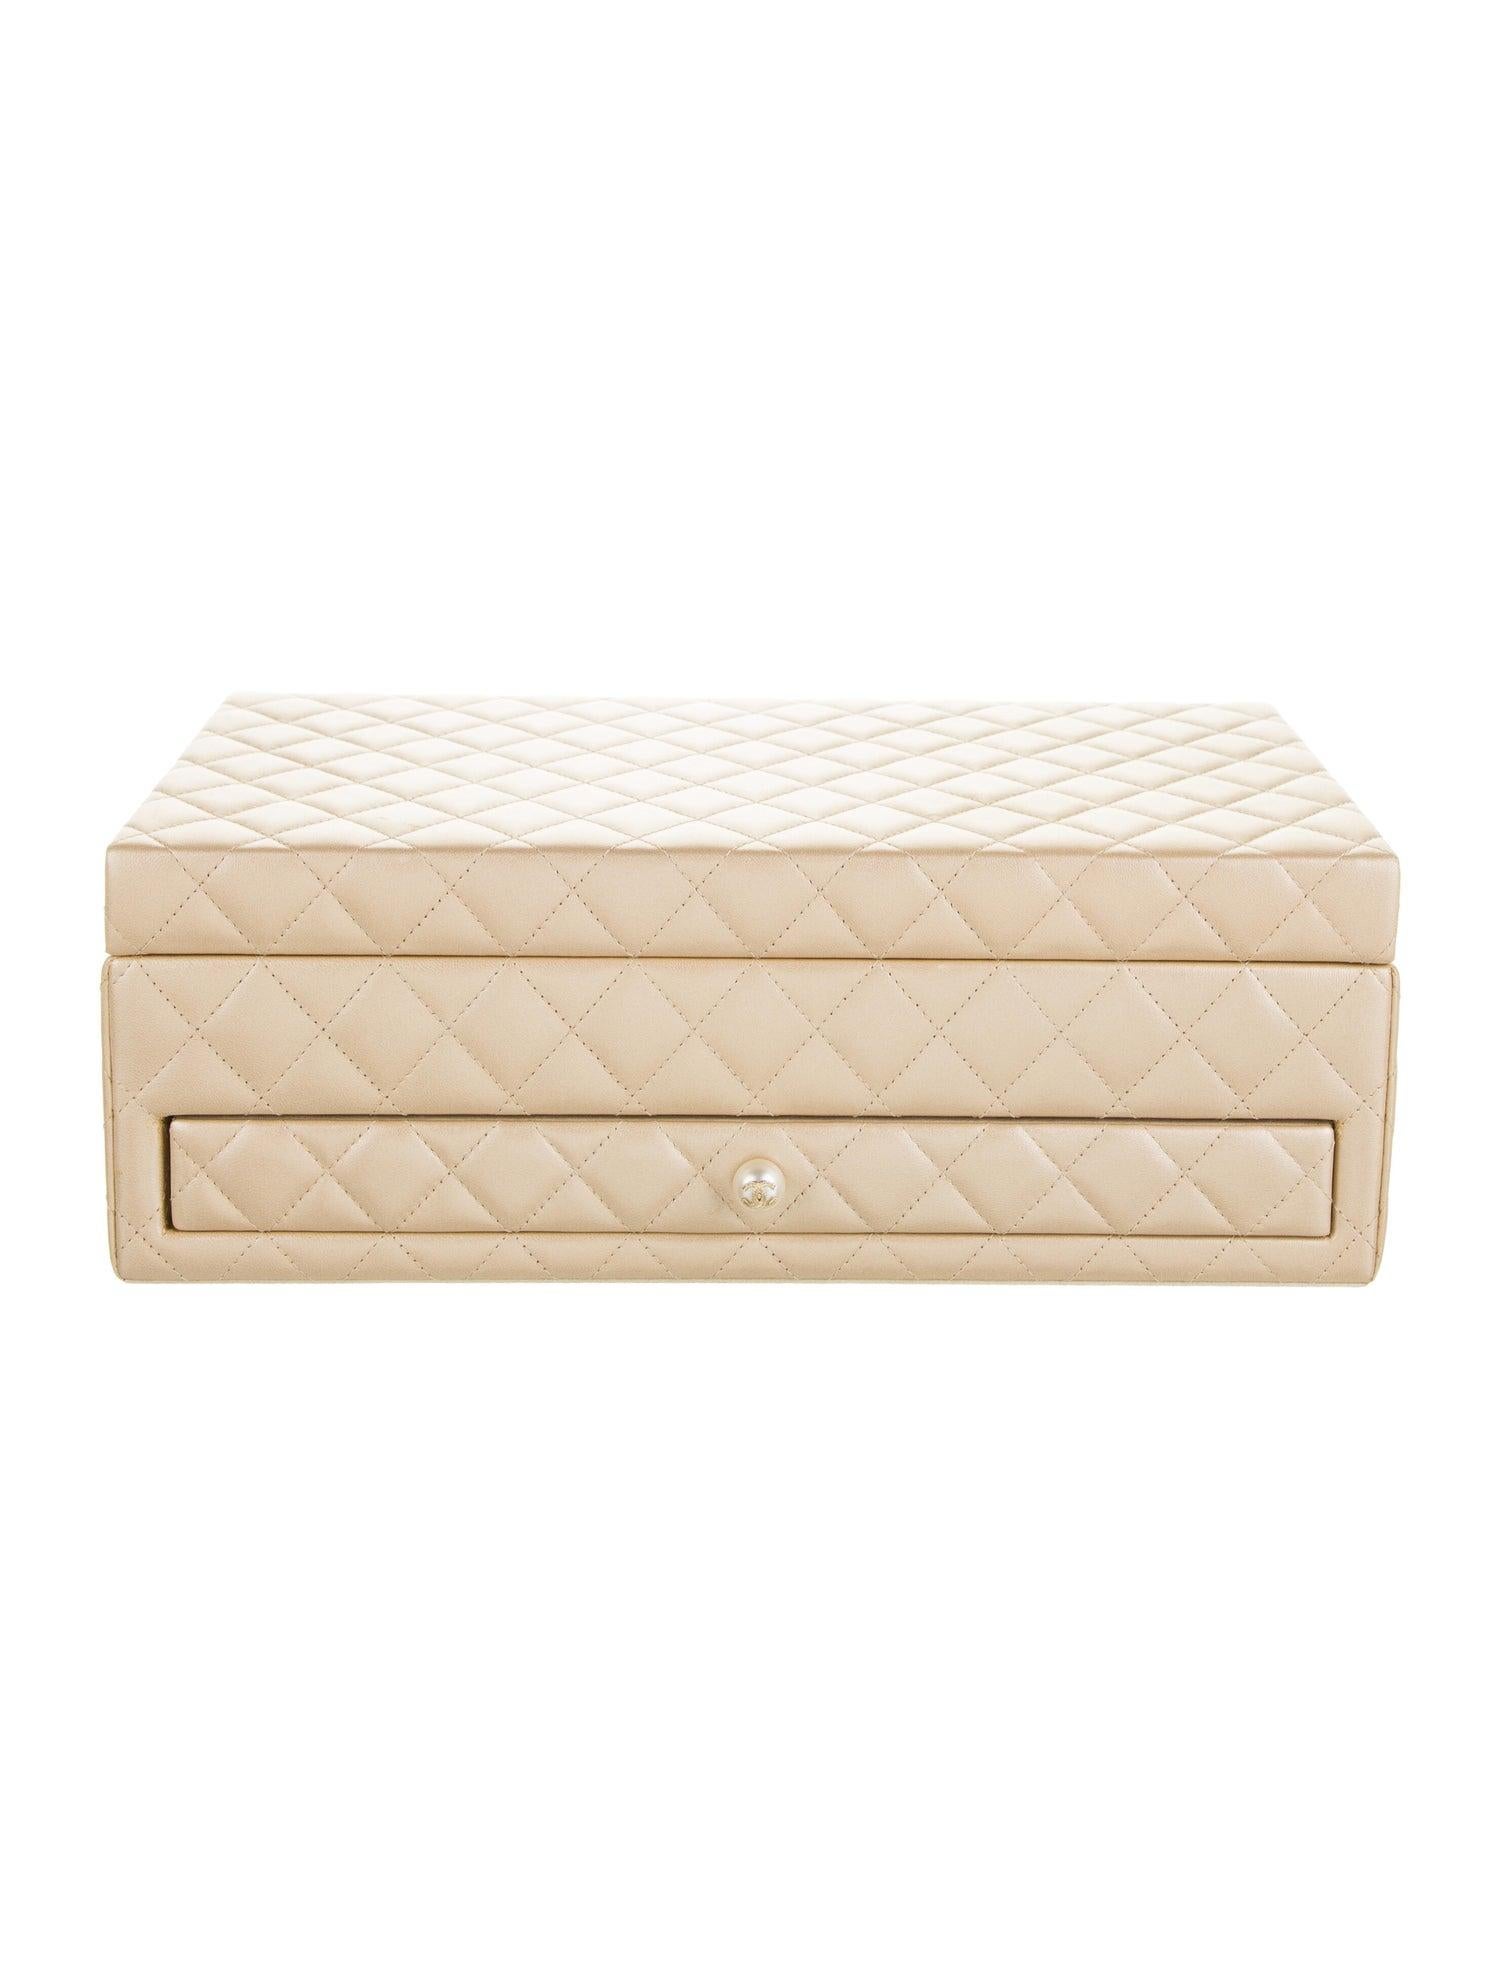 Chanel Limited Edition Perle Lammfell gesteppte Leder seltenen Schmuck-Box Vanity Case Home Decor

Goldfarbene Hardware
Gestepptes Lammfell
CC Schubladenknopf mit Perlmuttbesatz
Mit herausnehmbarem oberen Fach und Schublade mit 12 Fächern
Maße: